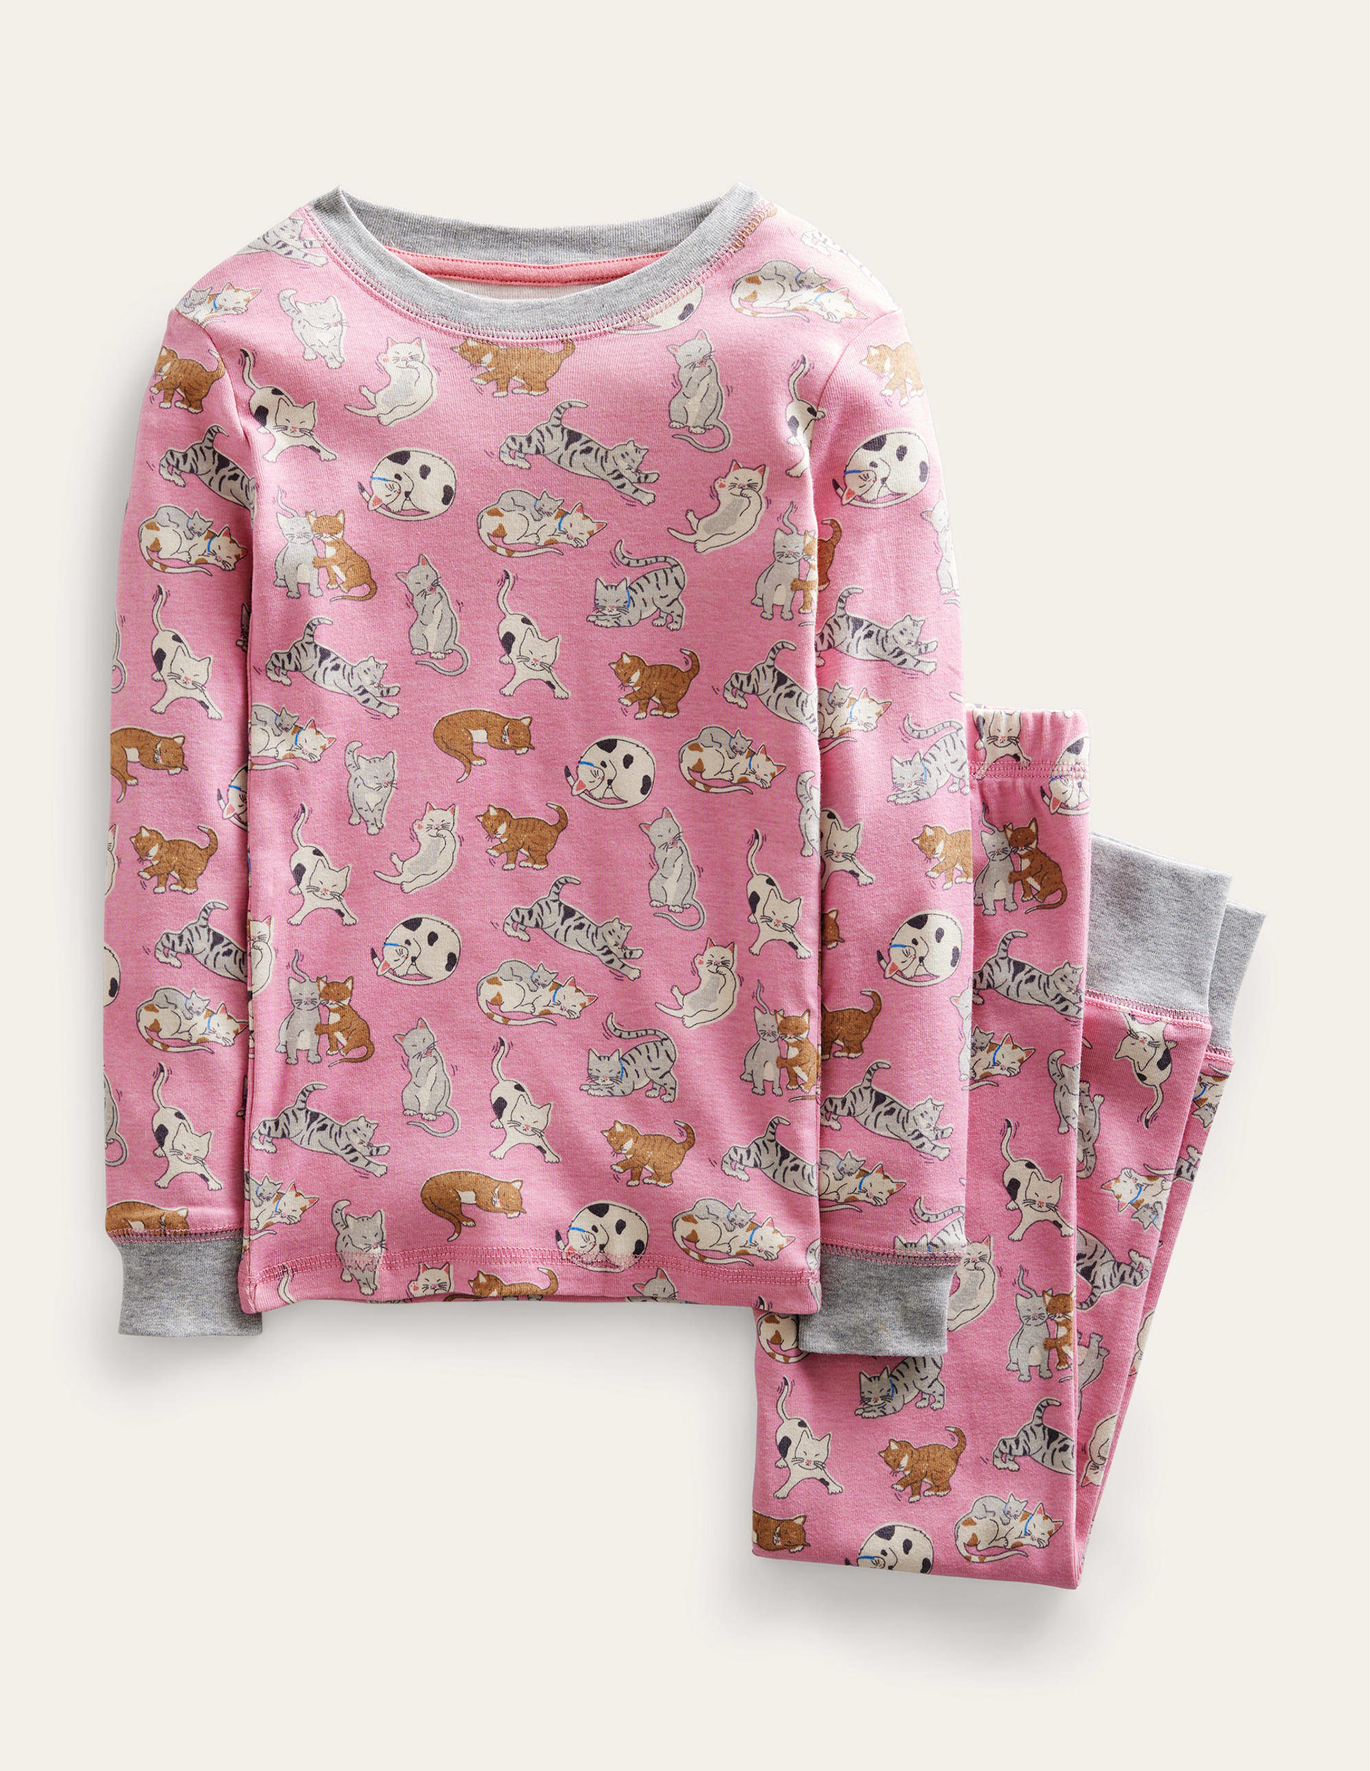 Boden Snug Long John Pyjamas - Formica Pink Cats